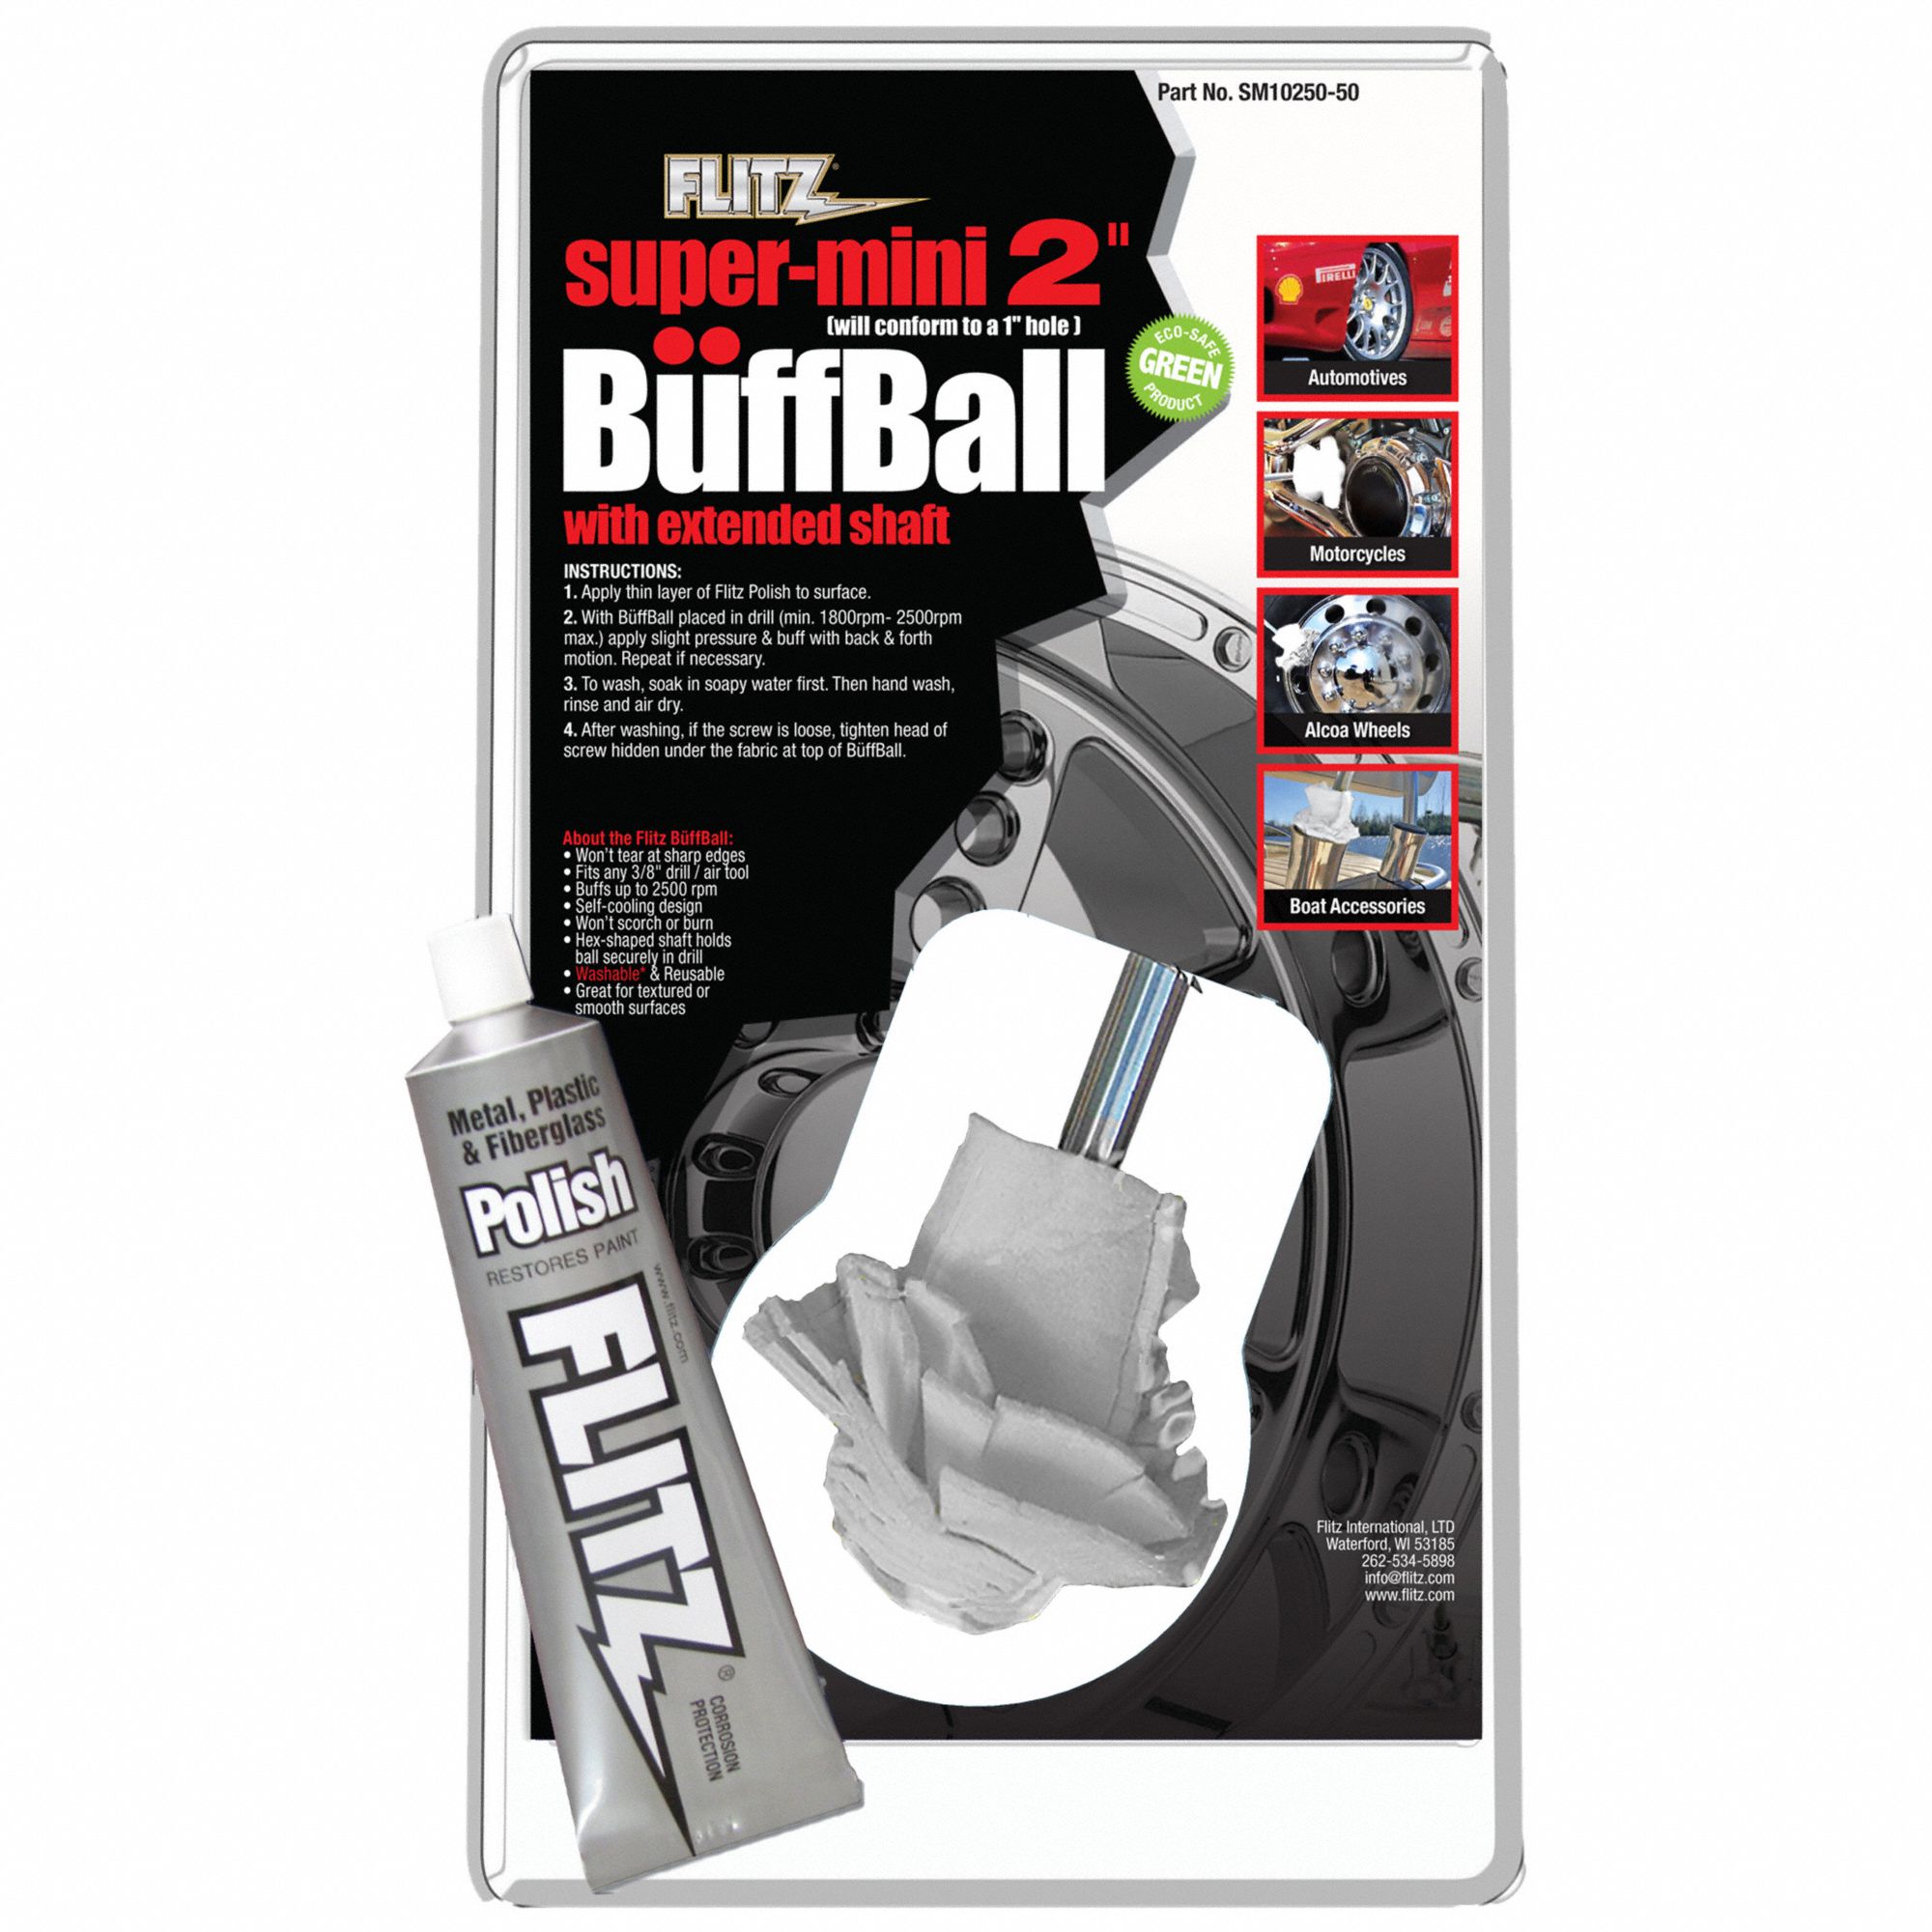 Buffing Ball: Bonnet, Unthreaded Center Hole, Ball, Microfiber